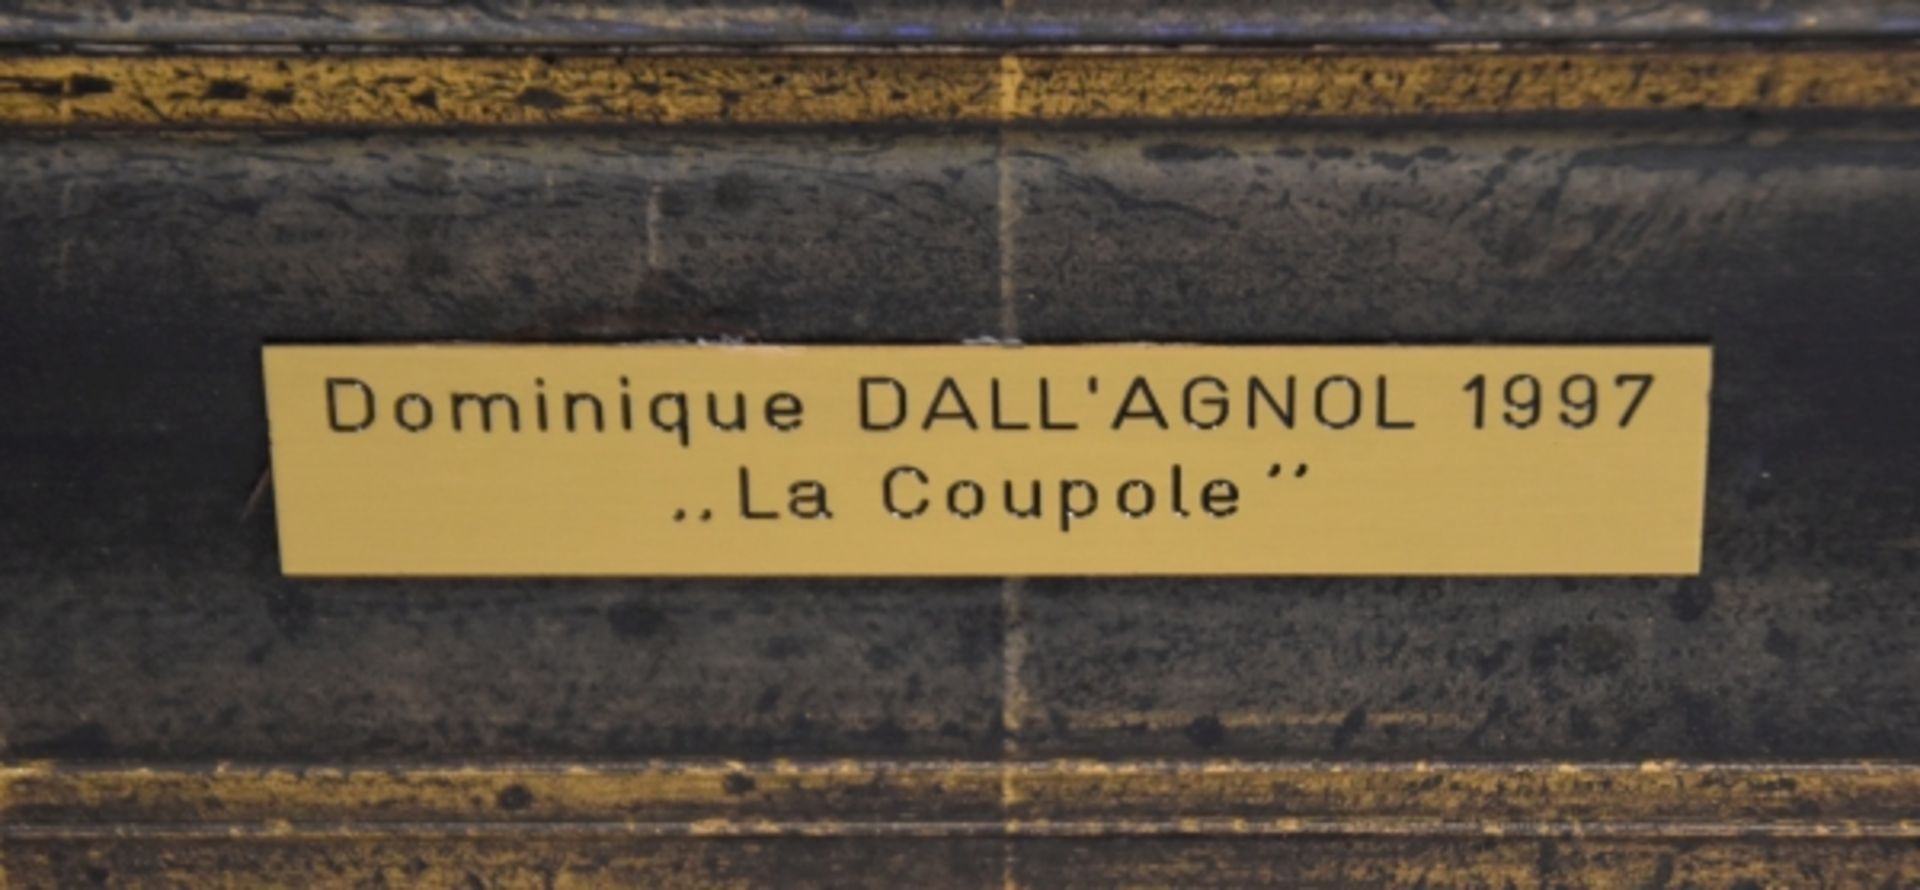 DALL'AGNOL Dominique "La Coupole" - Image 5 of 5